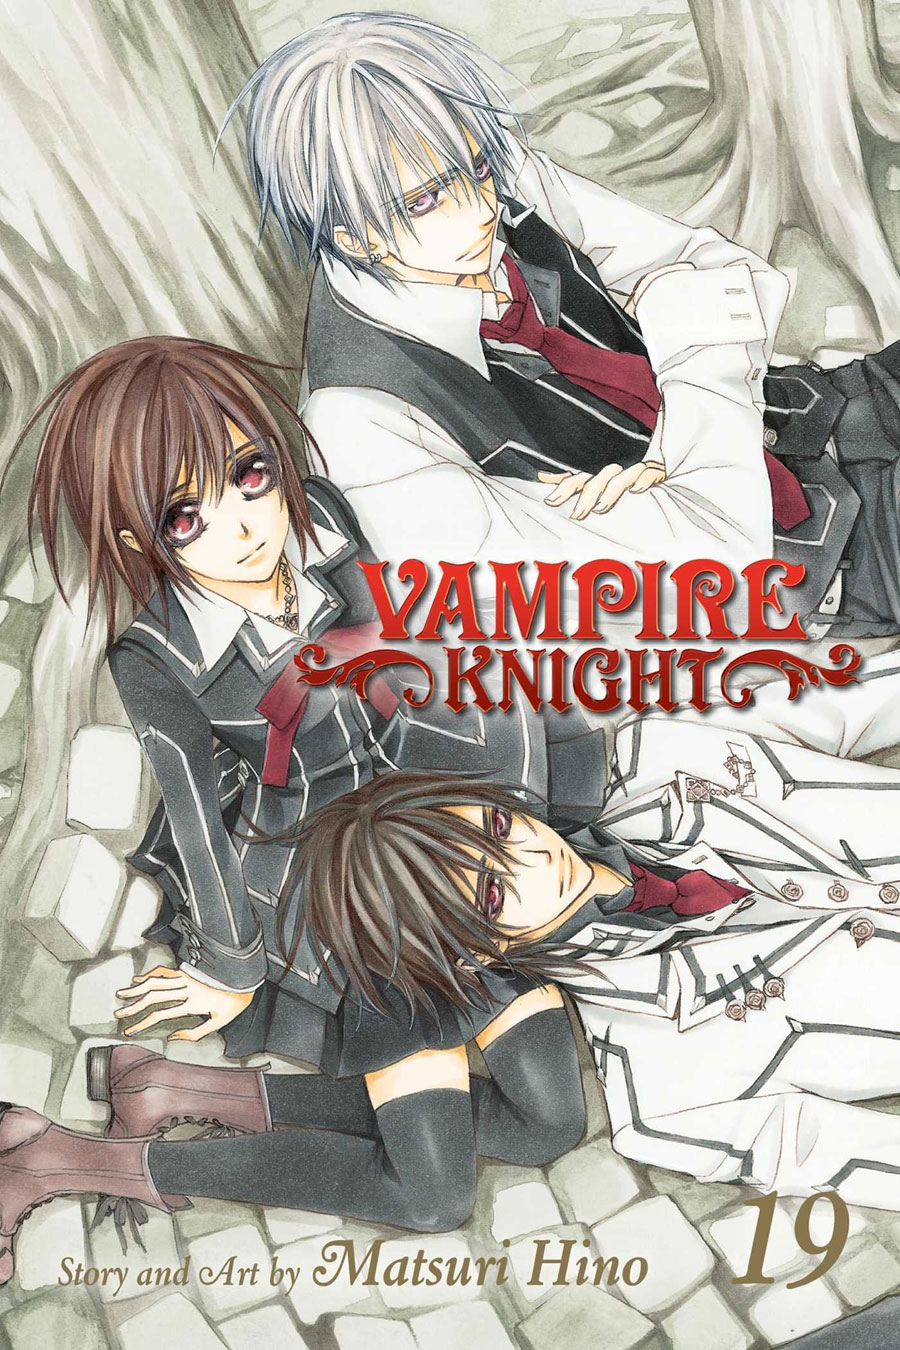 Vampire Knight Vol 19 TP Limited Edition